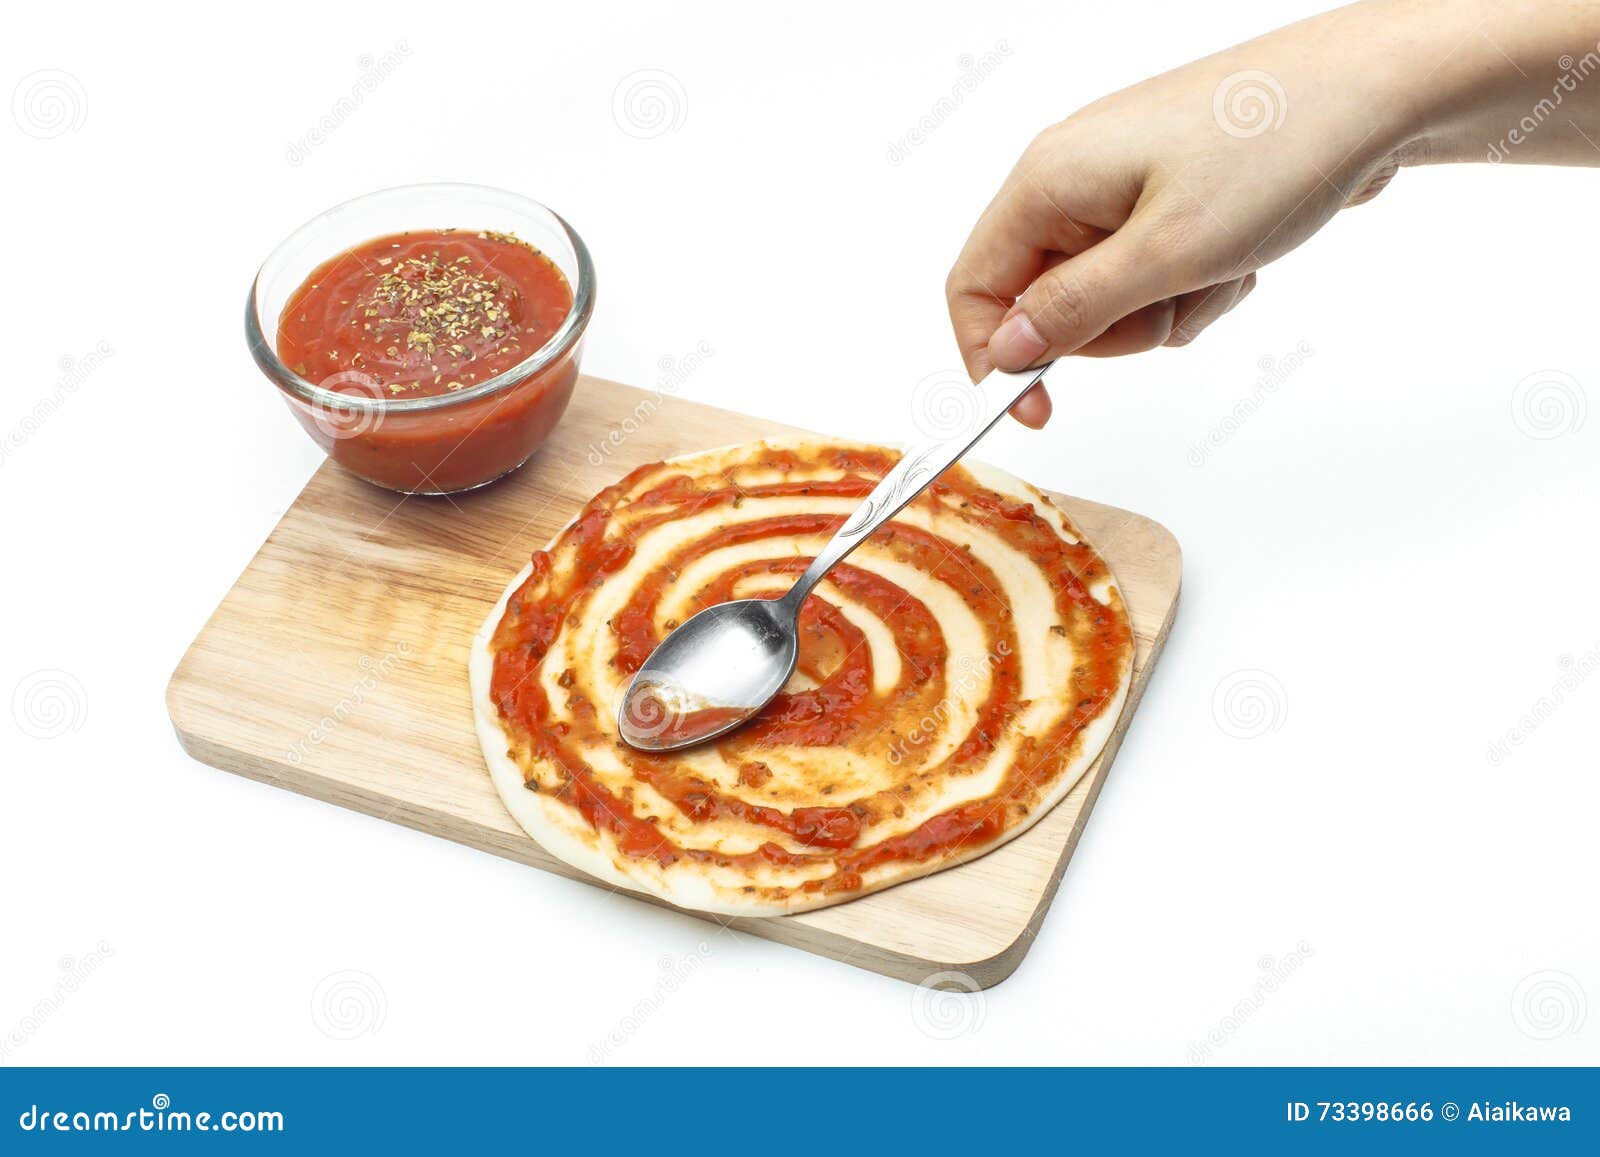 что такое белый соус в пицце фото 55